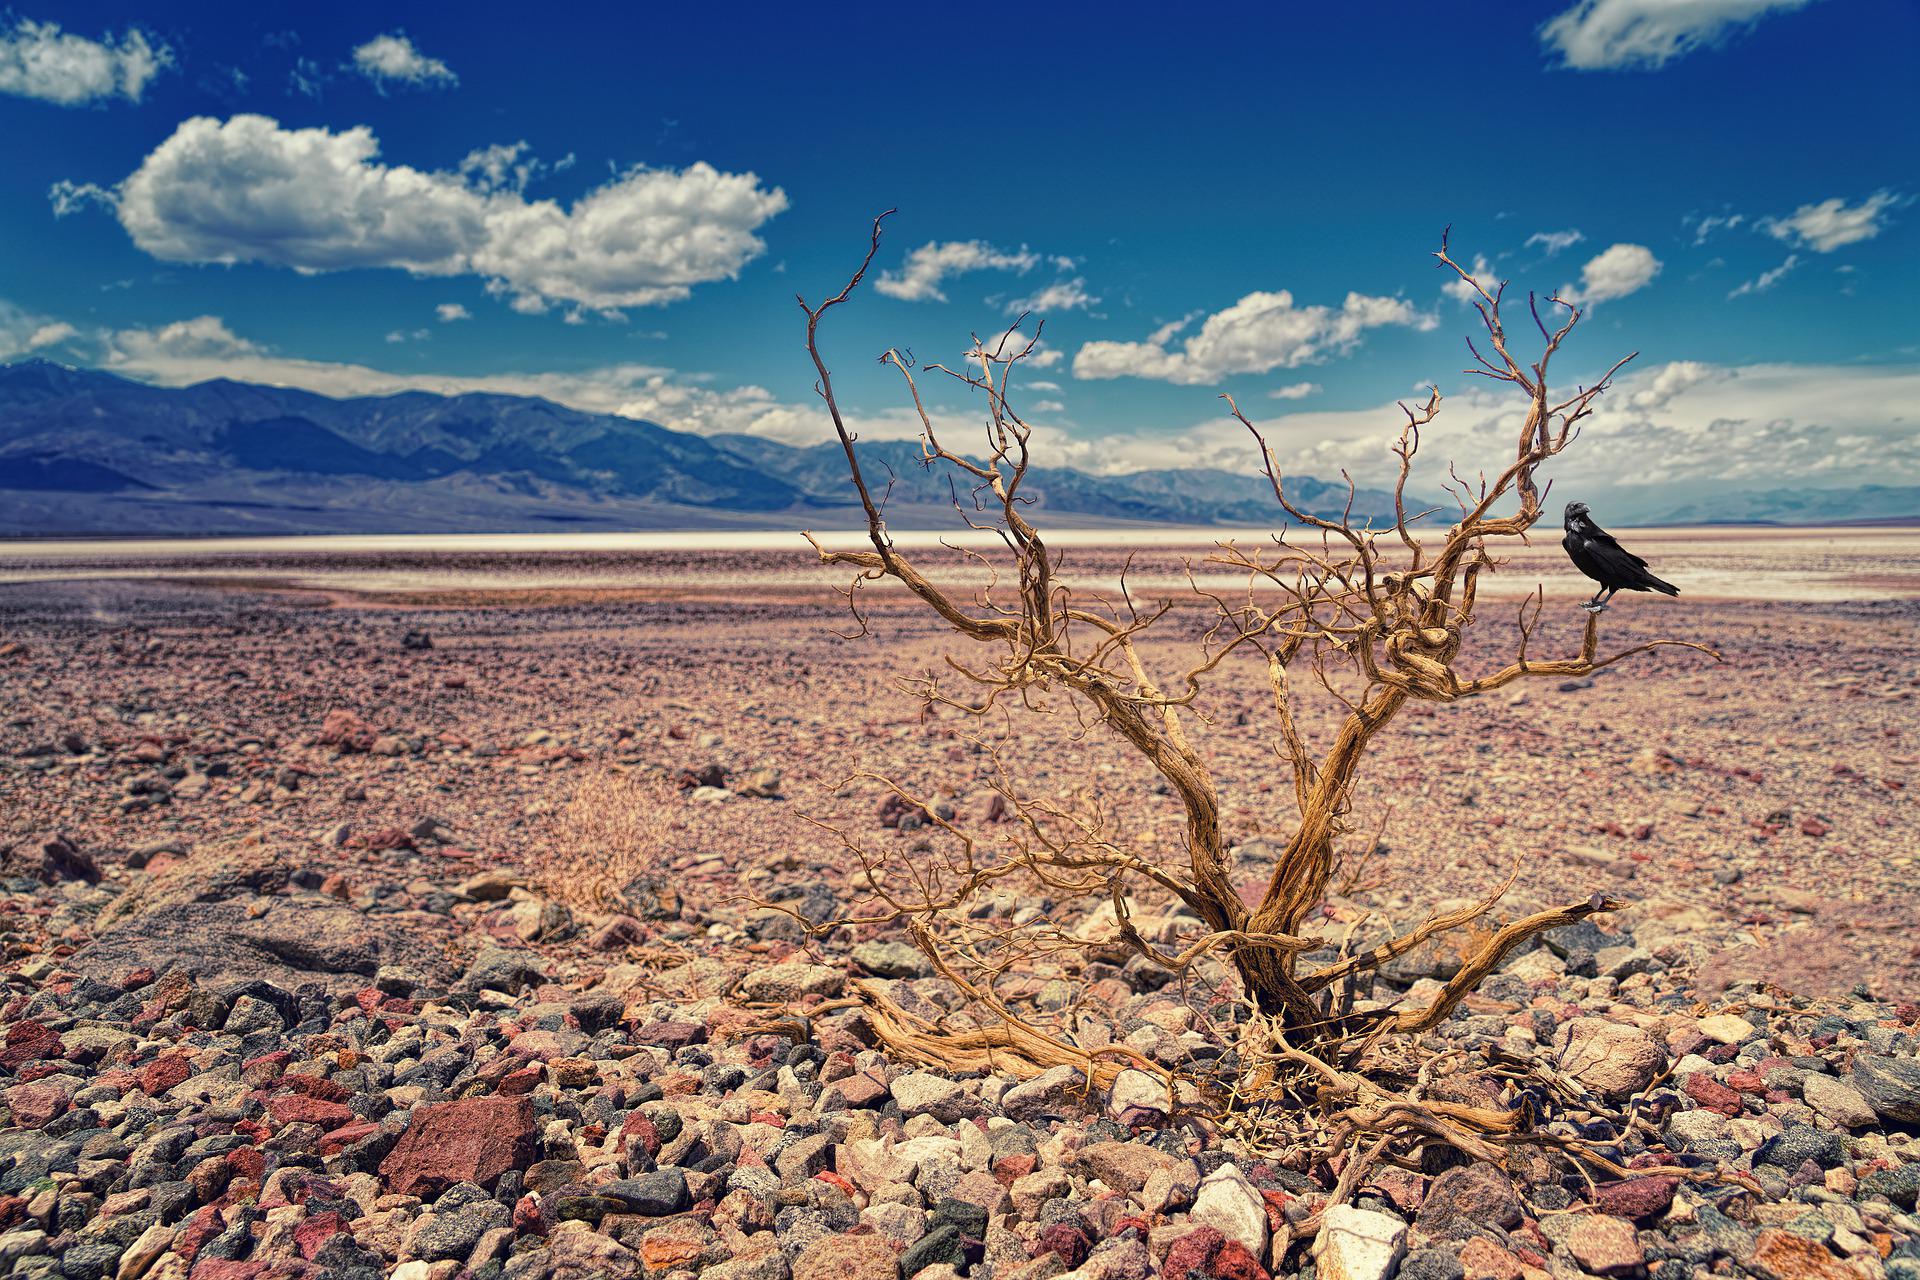 Le désert de Californie s'étend de plus en plus et devient plus aride encore. © jplenio, pixabay